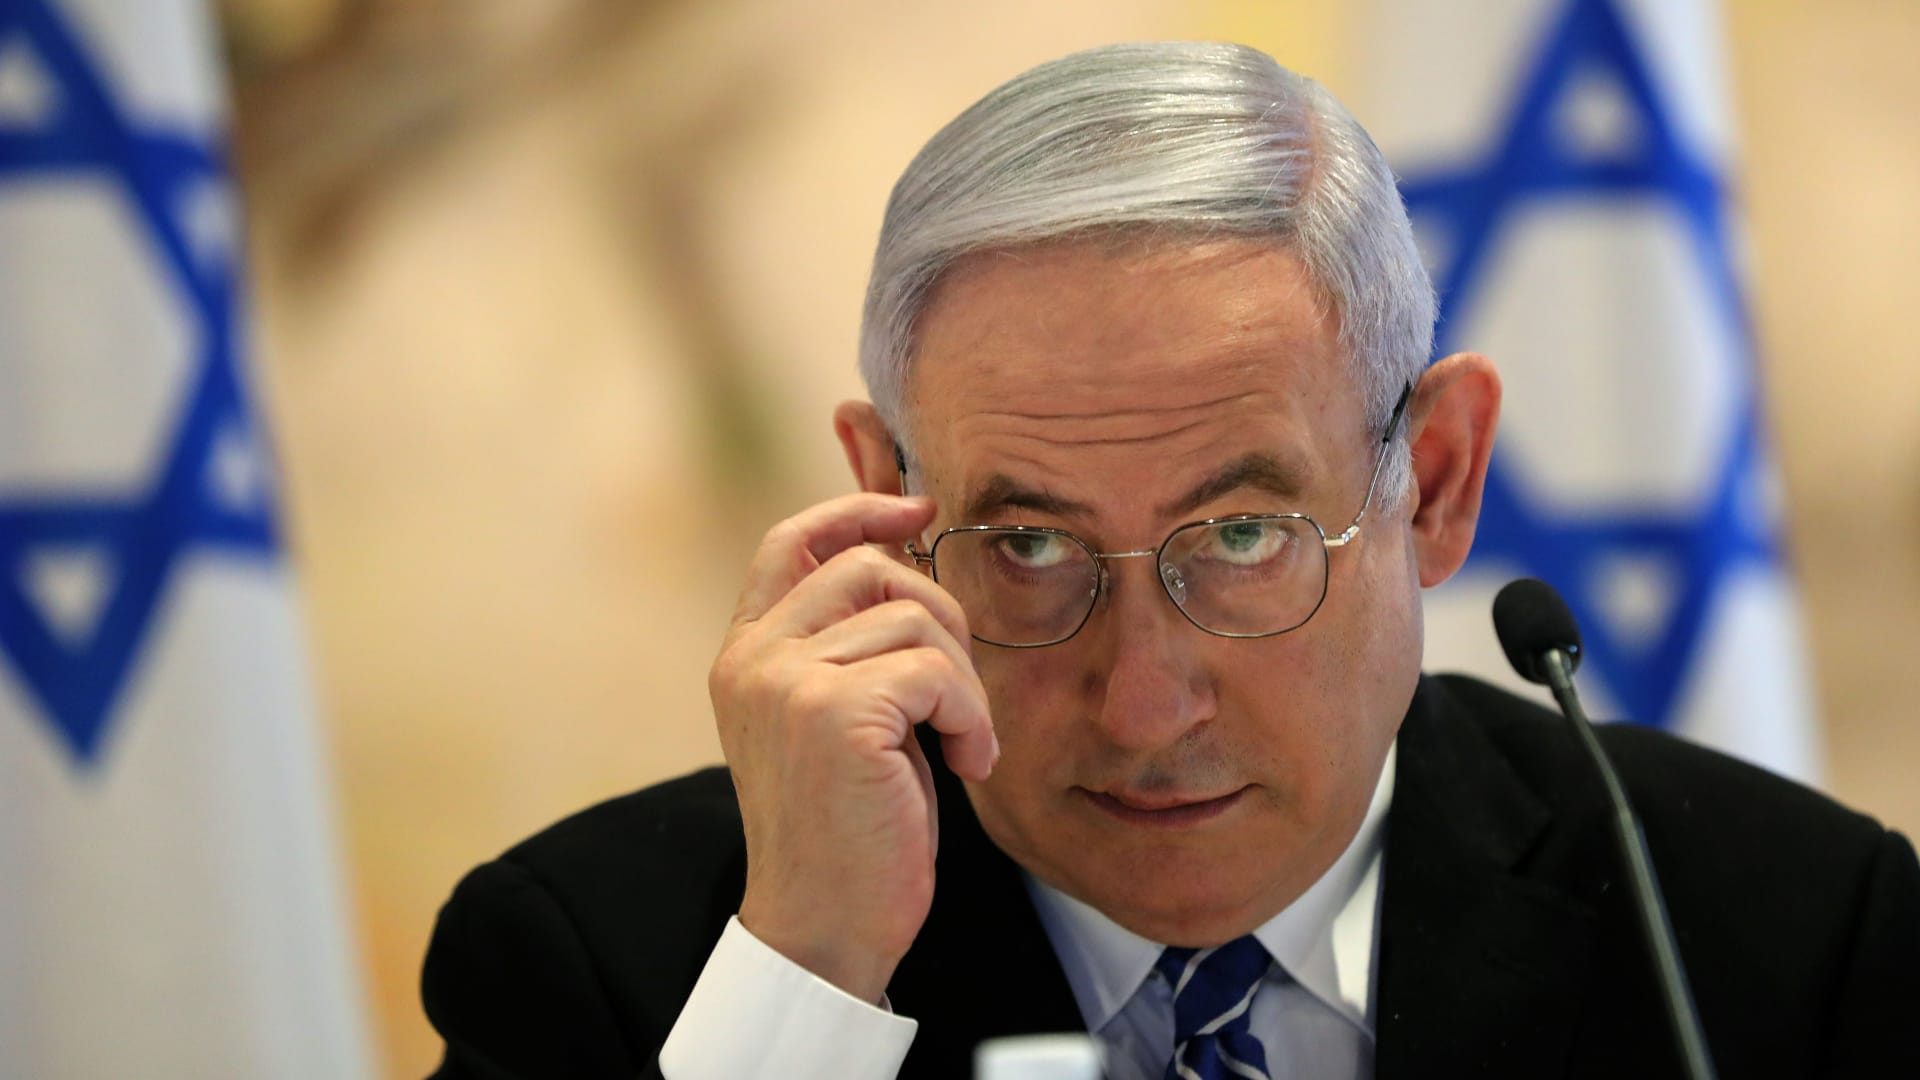 أنور قرقاش لـCNN: الاتفاق مع إسرائيل "نزع فتيل قنبلة موقوتة"